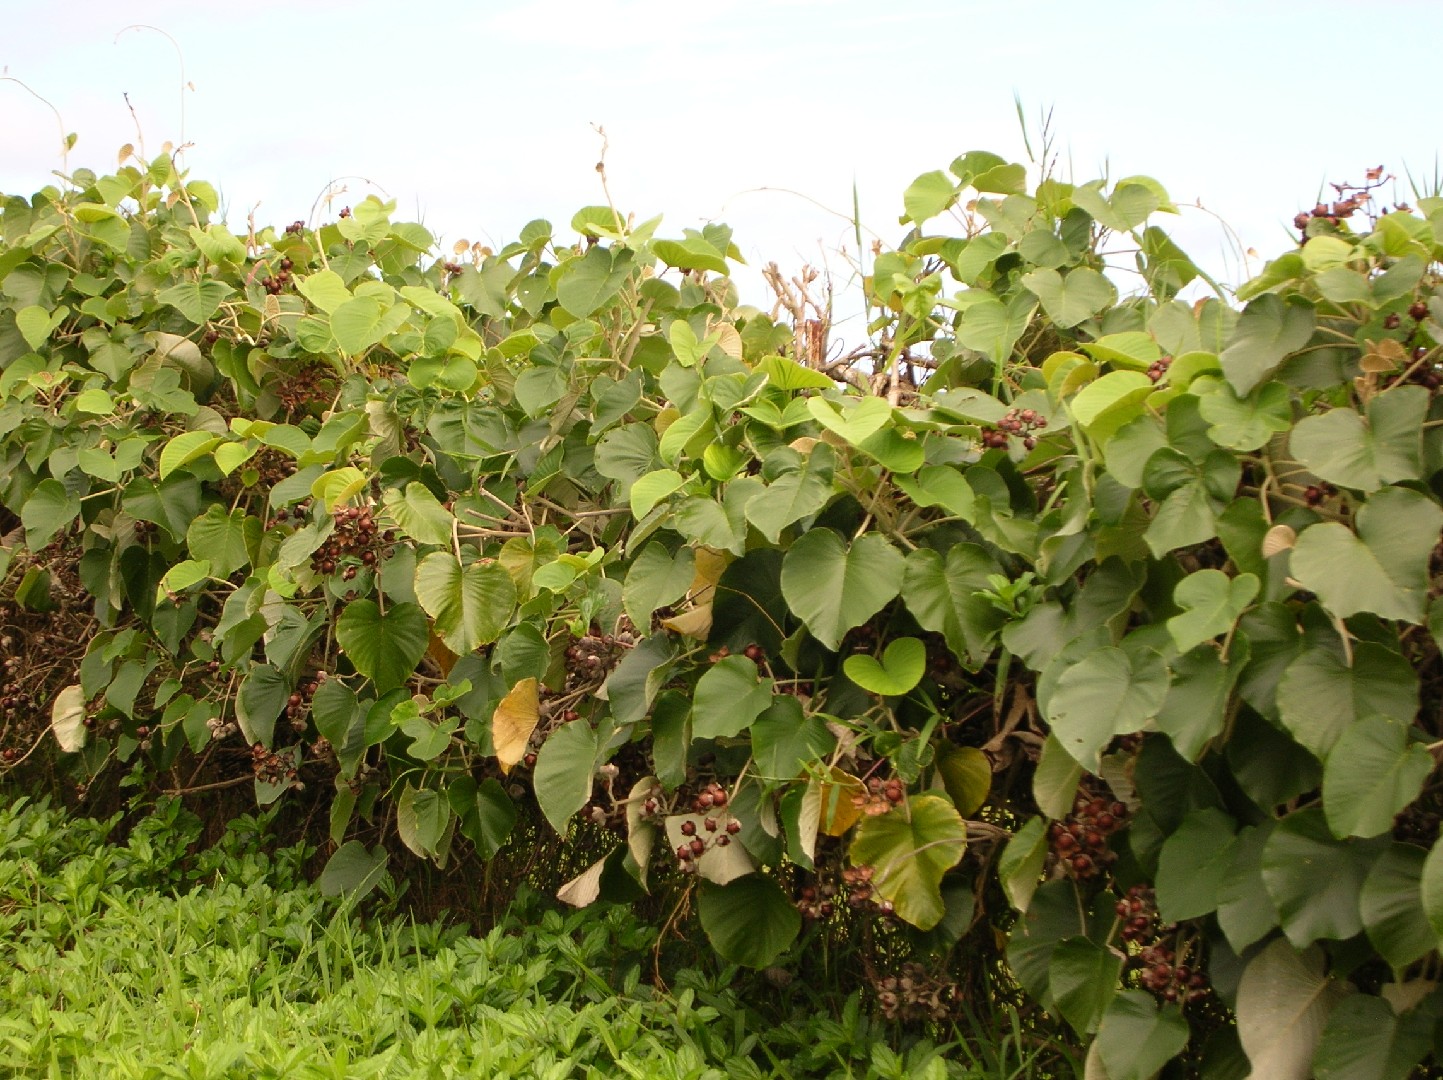 【無農薬・無消毒】ハワイアンベイビーウッドローズ（オオバアサガオ）の種 100粒ハワイアンベイビーウッドローズ